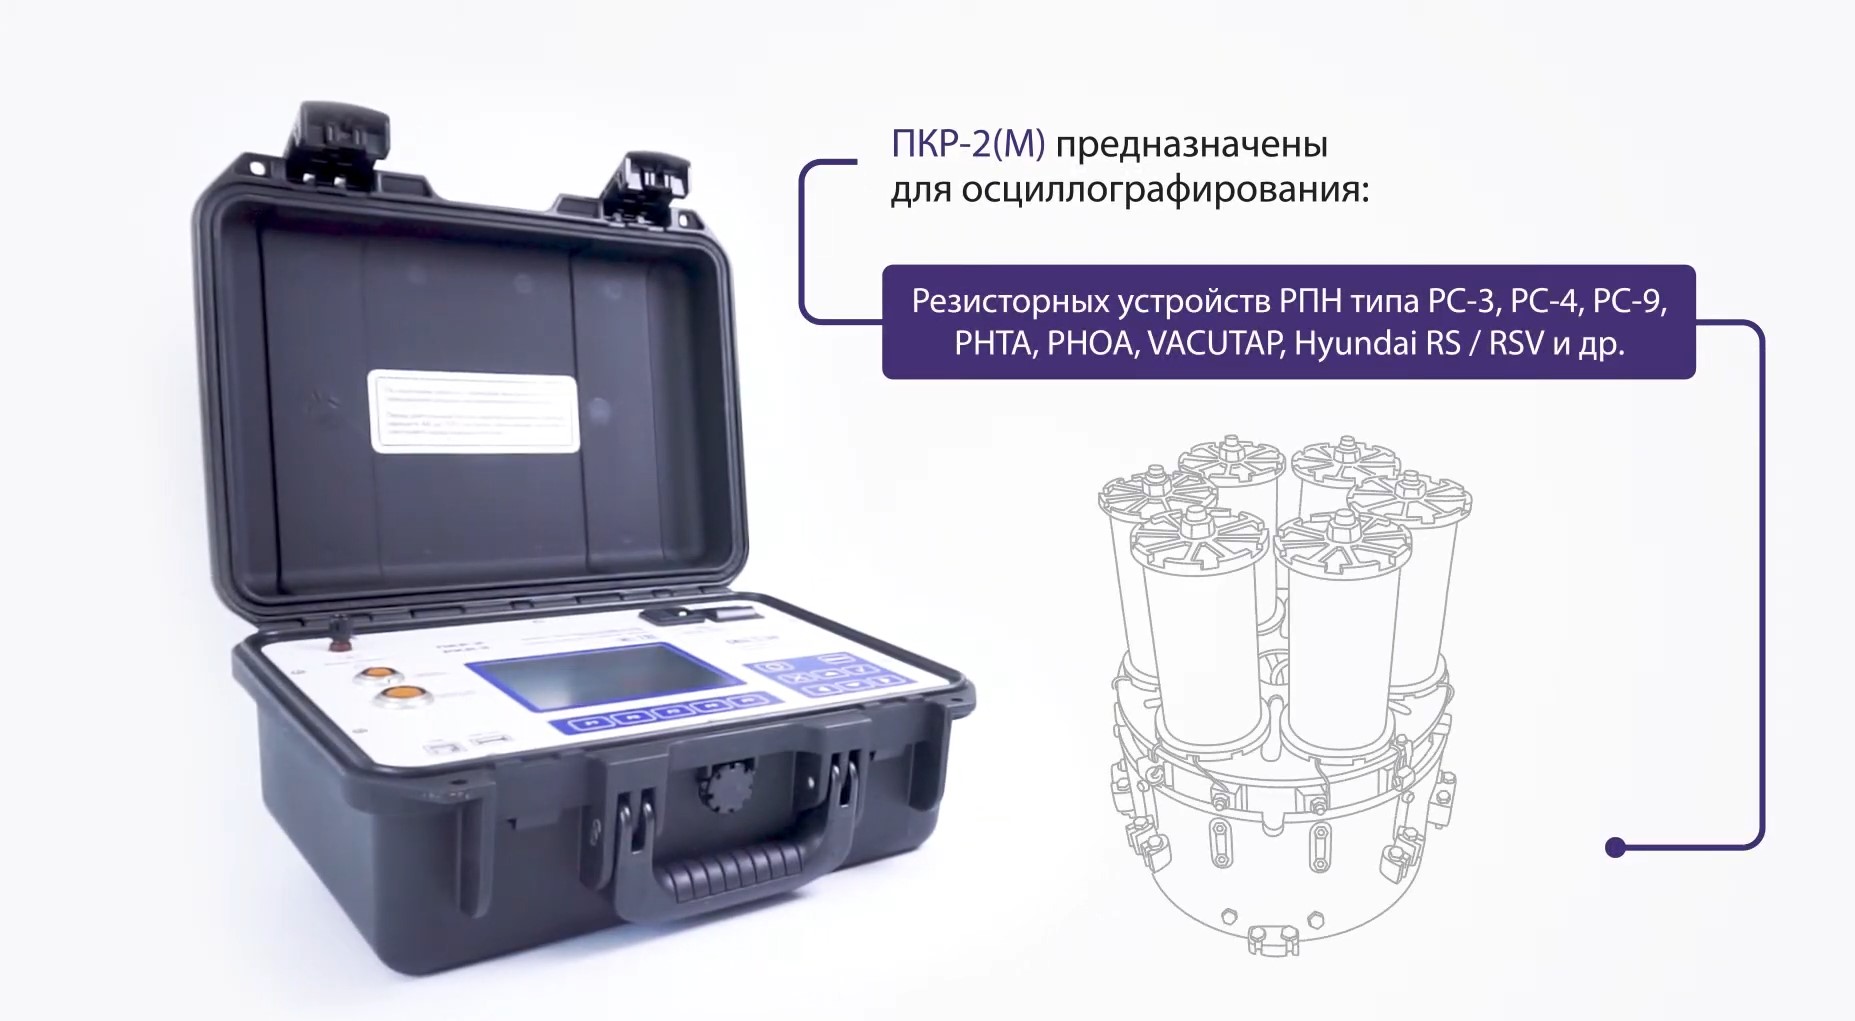 Видео-обзор прибор контроля устройств РПН трансформатора – ПКР-2(М), СКБ ЭП